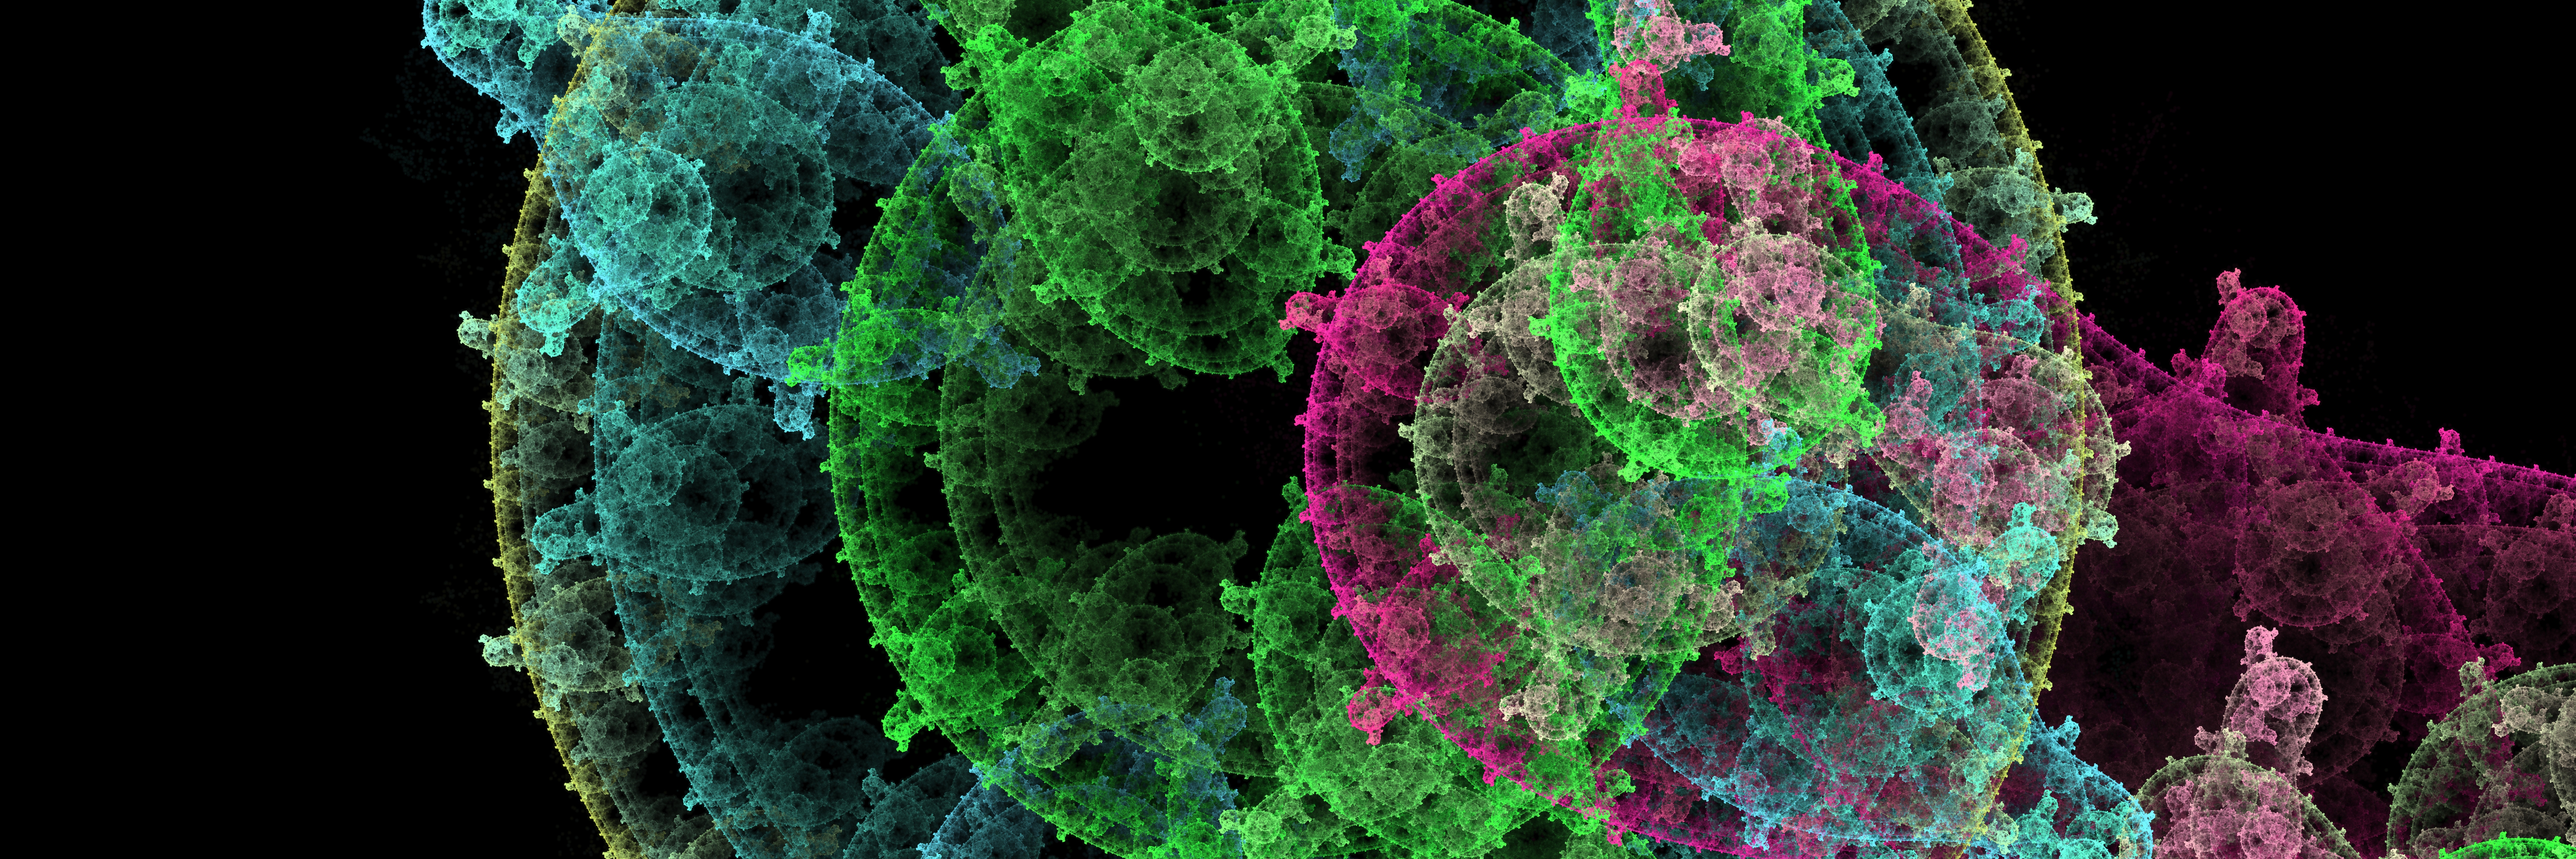 Abstract Pattern Of Virus